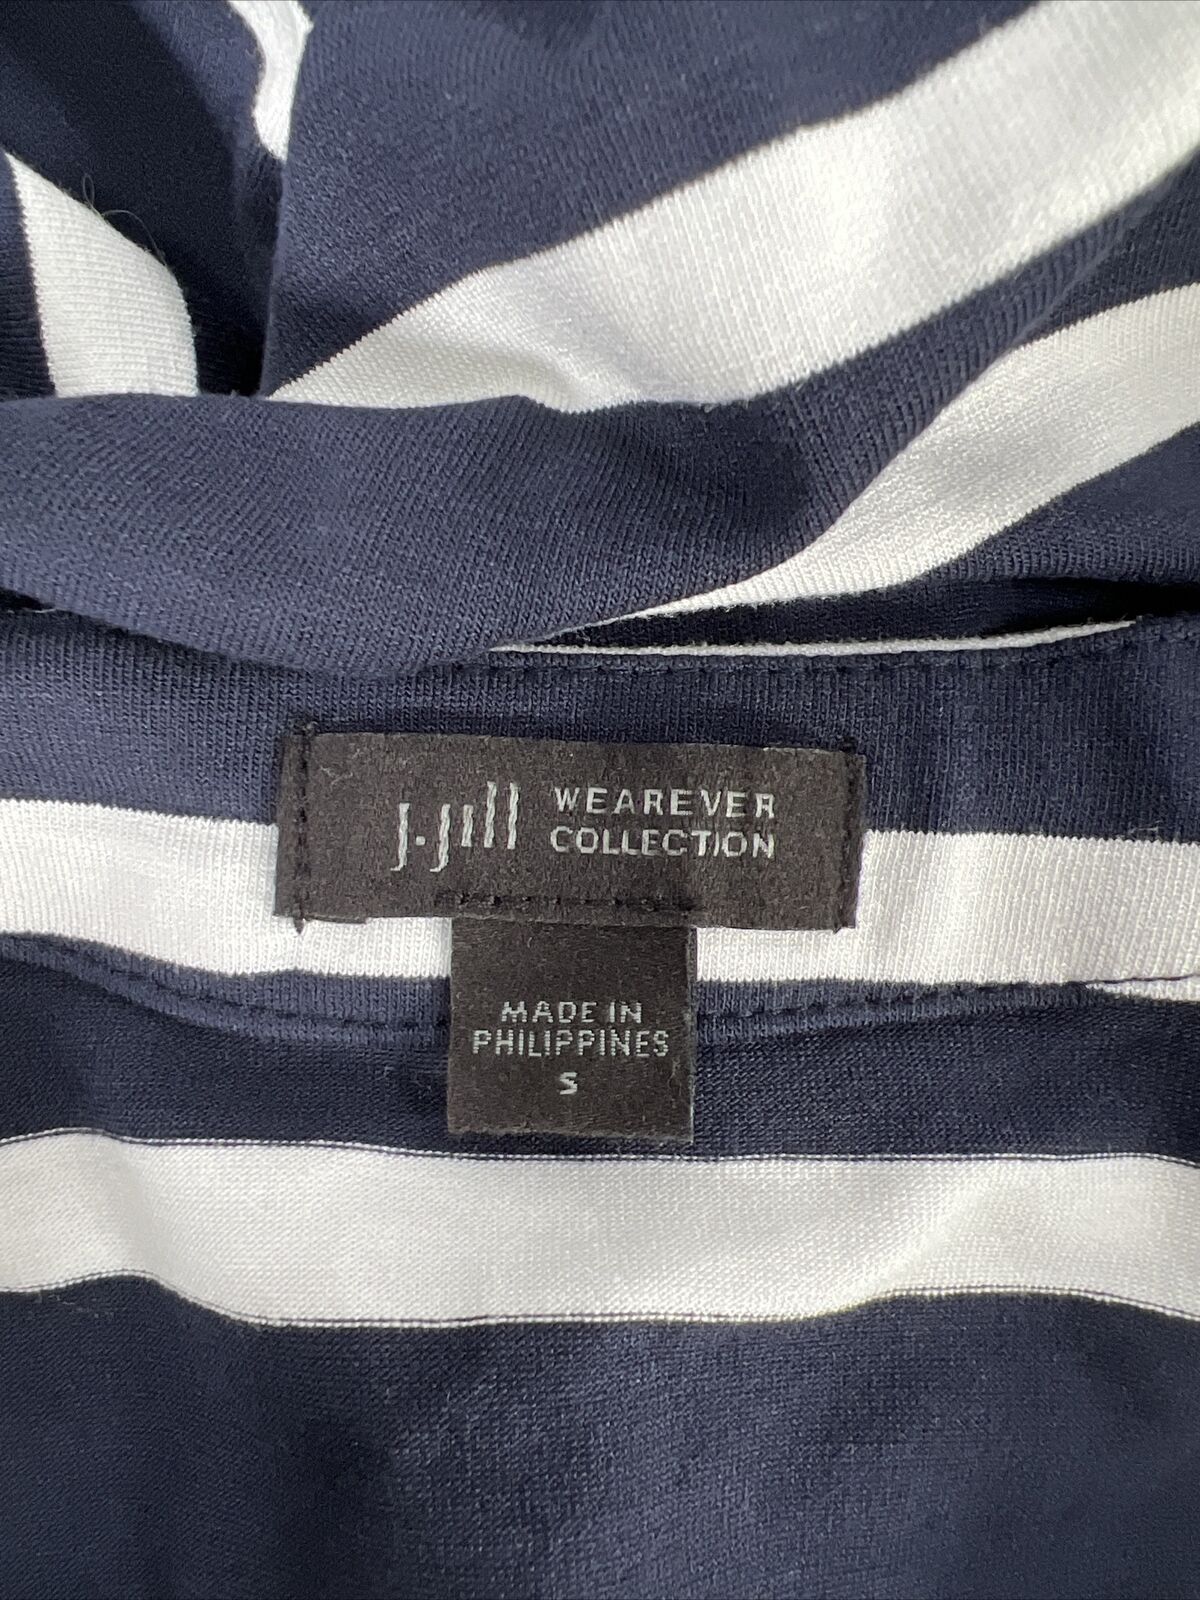 J.Jill Women's Blue/White Striped Long Sleeve Cardigan Sweater - S